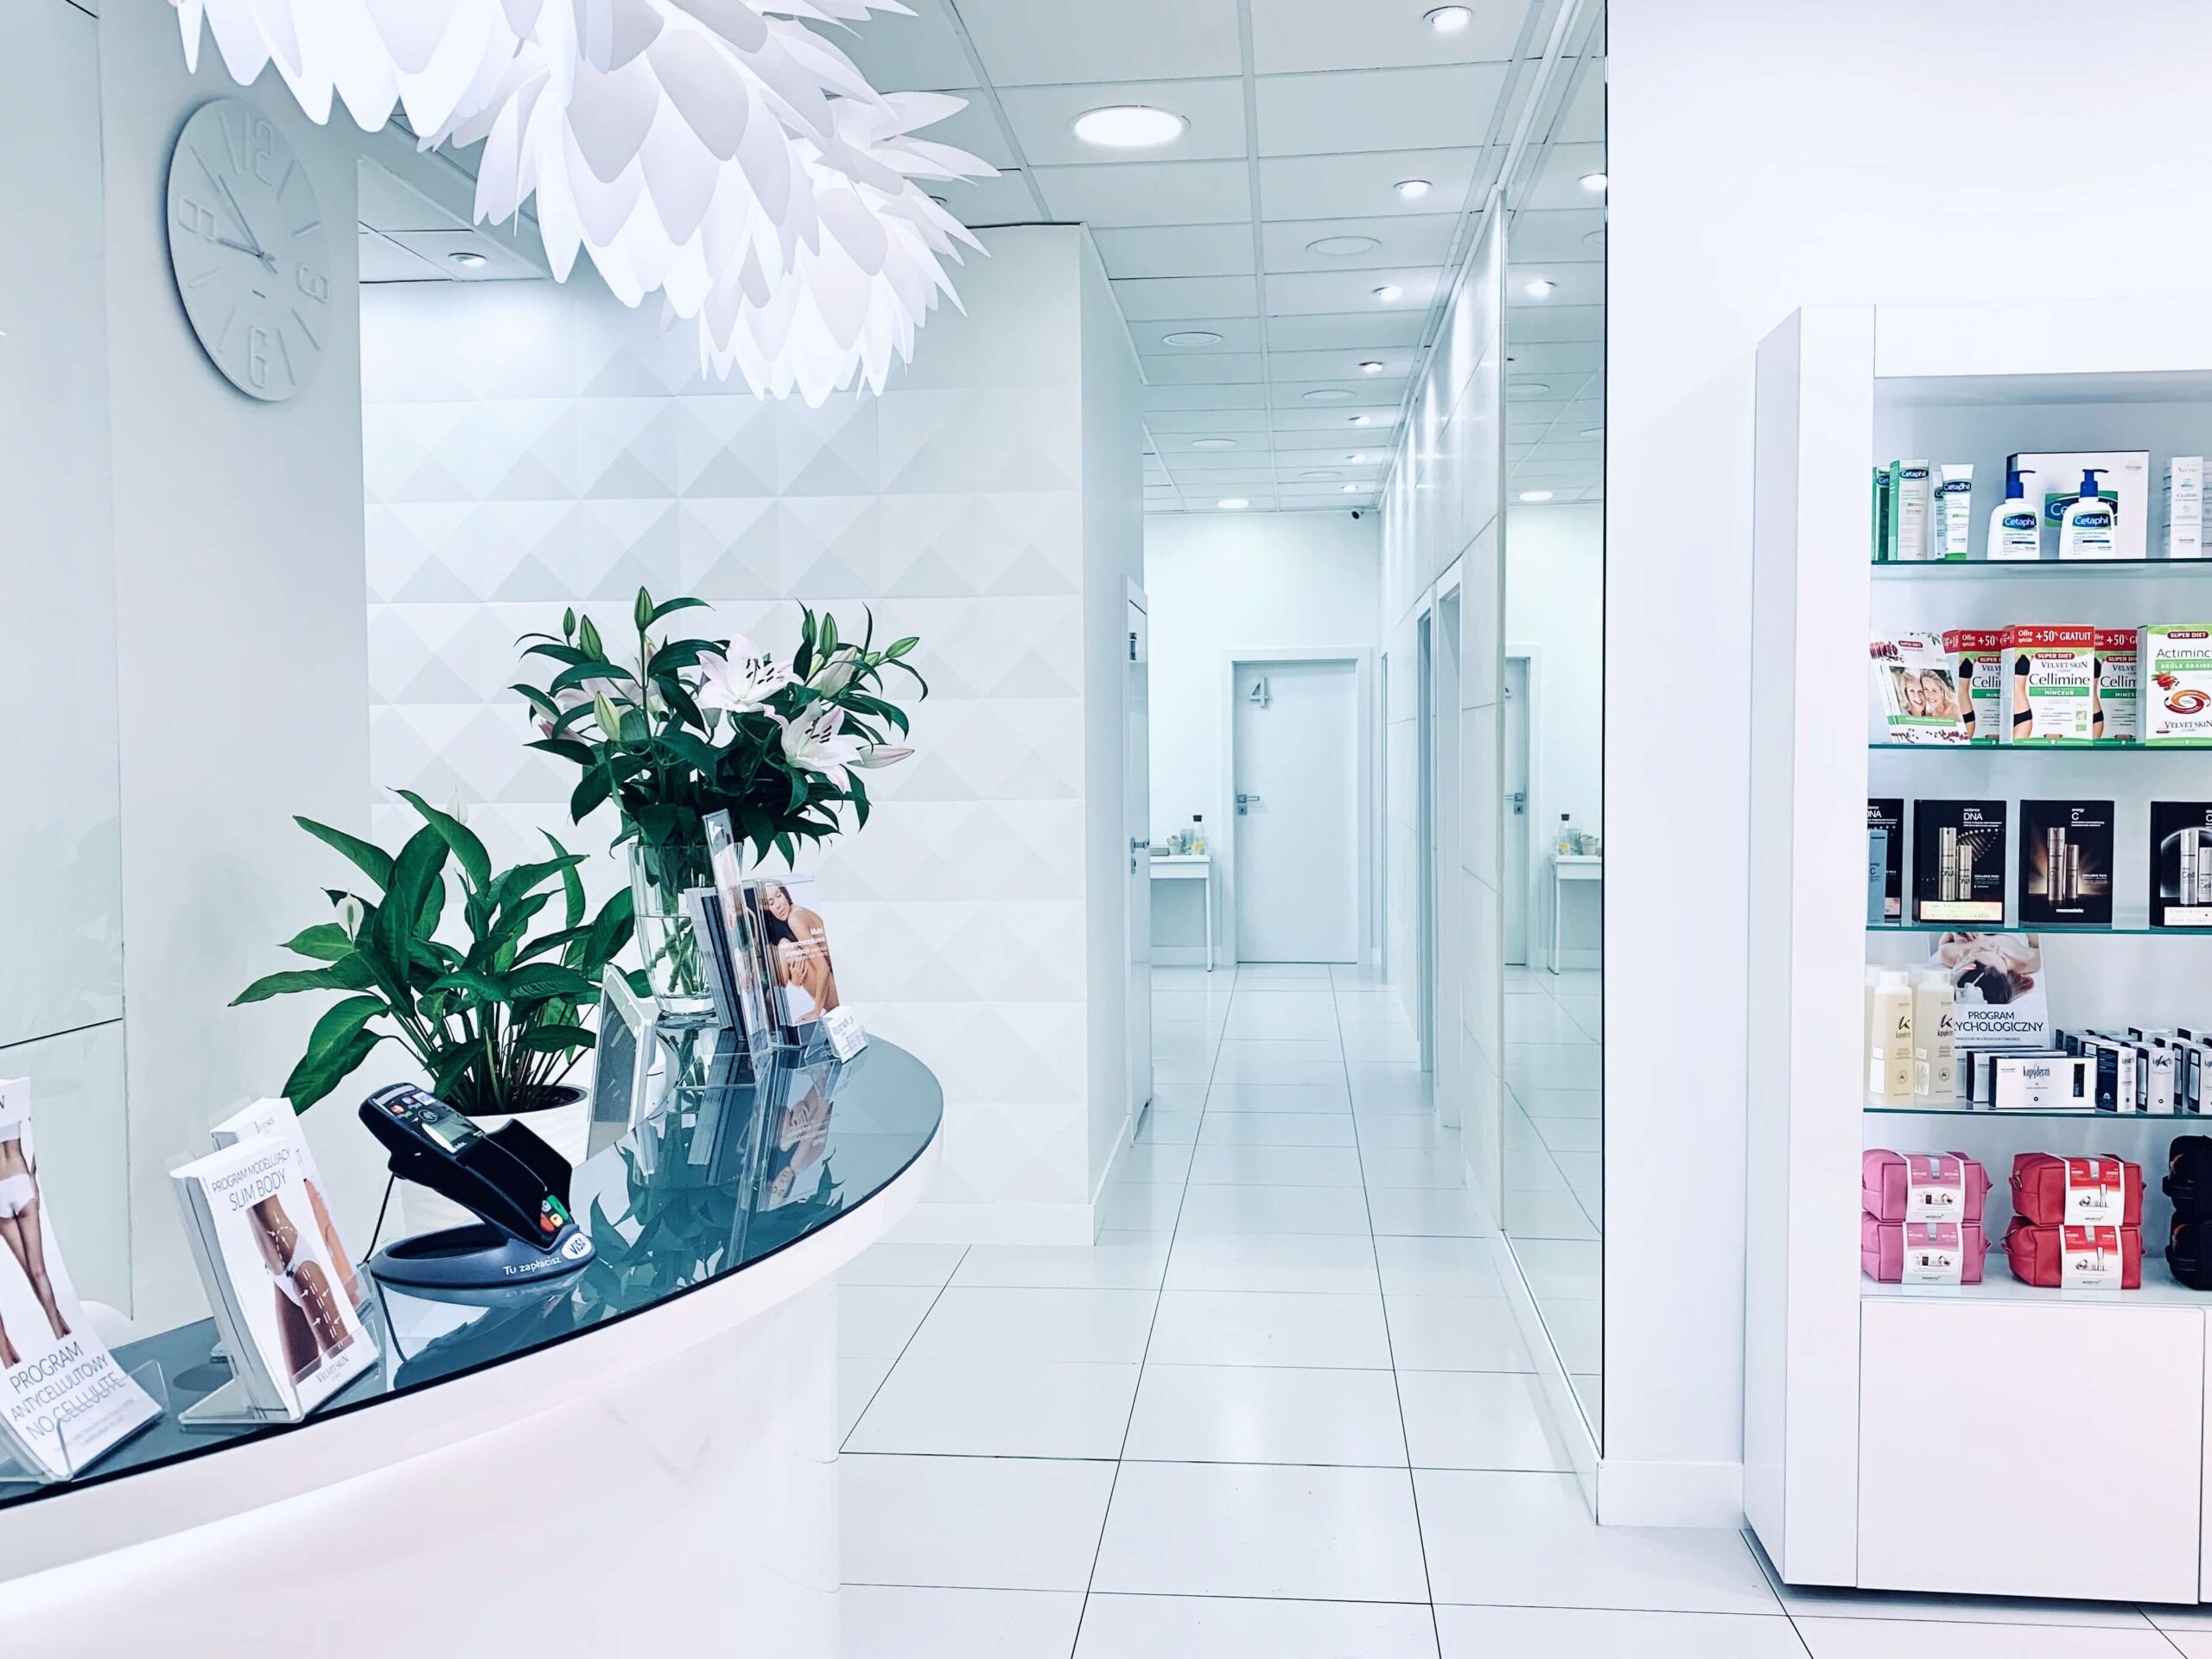 velvet skin clinic ul świętokrzyska wygląd korytarza